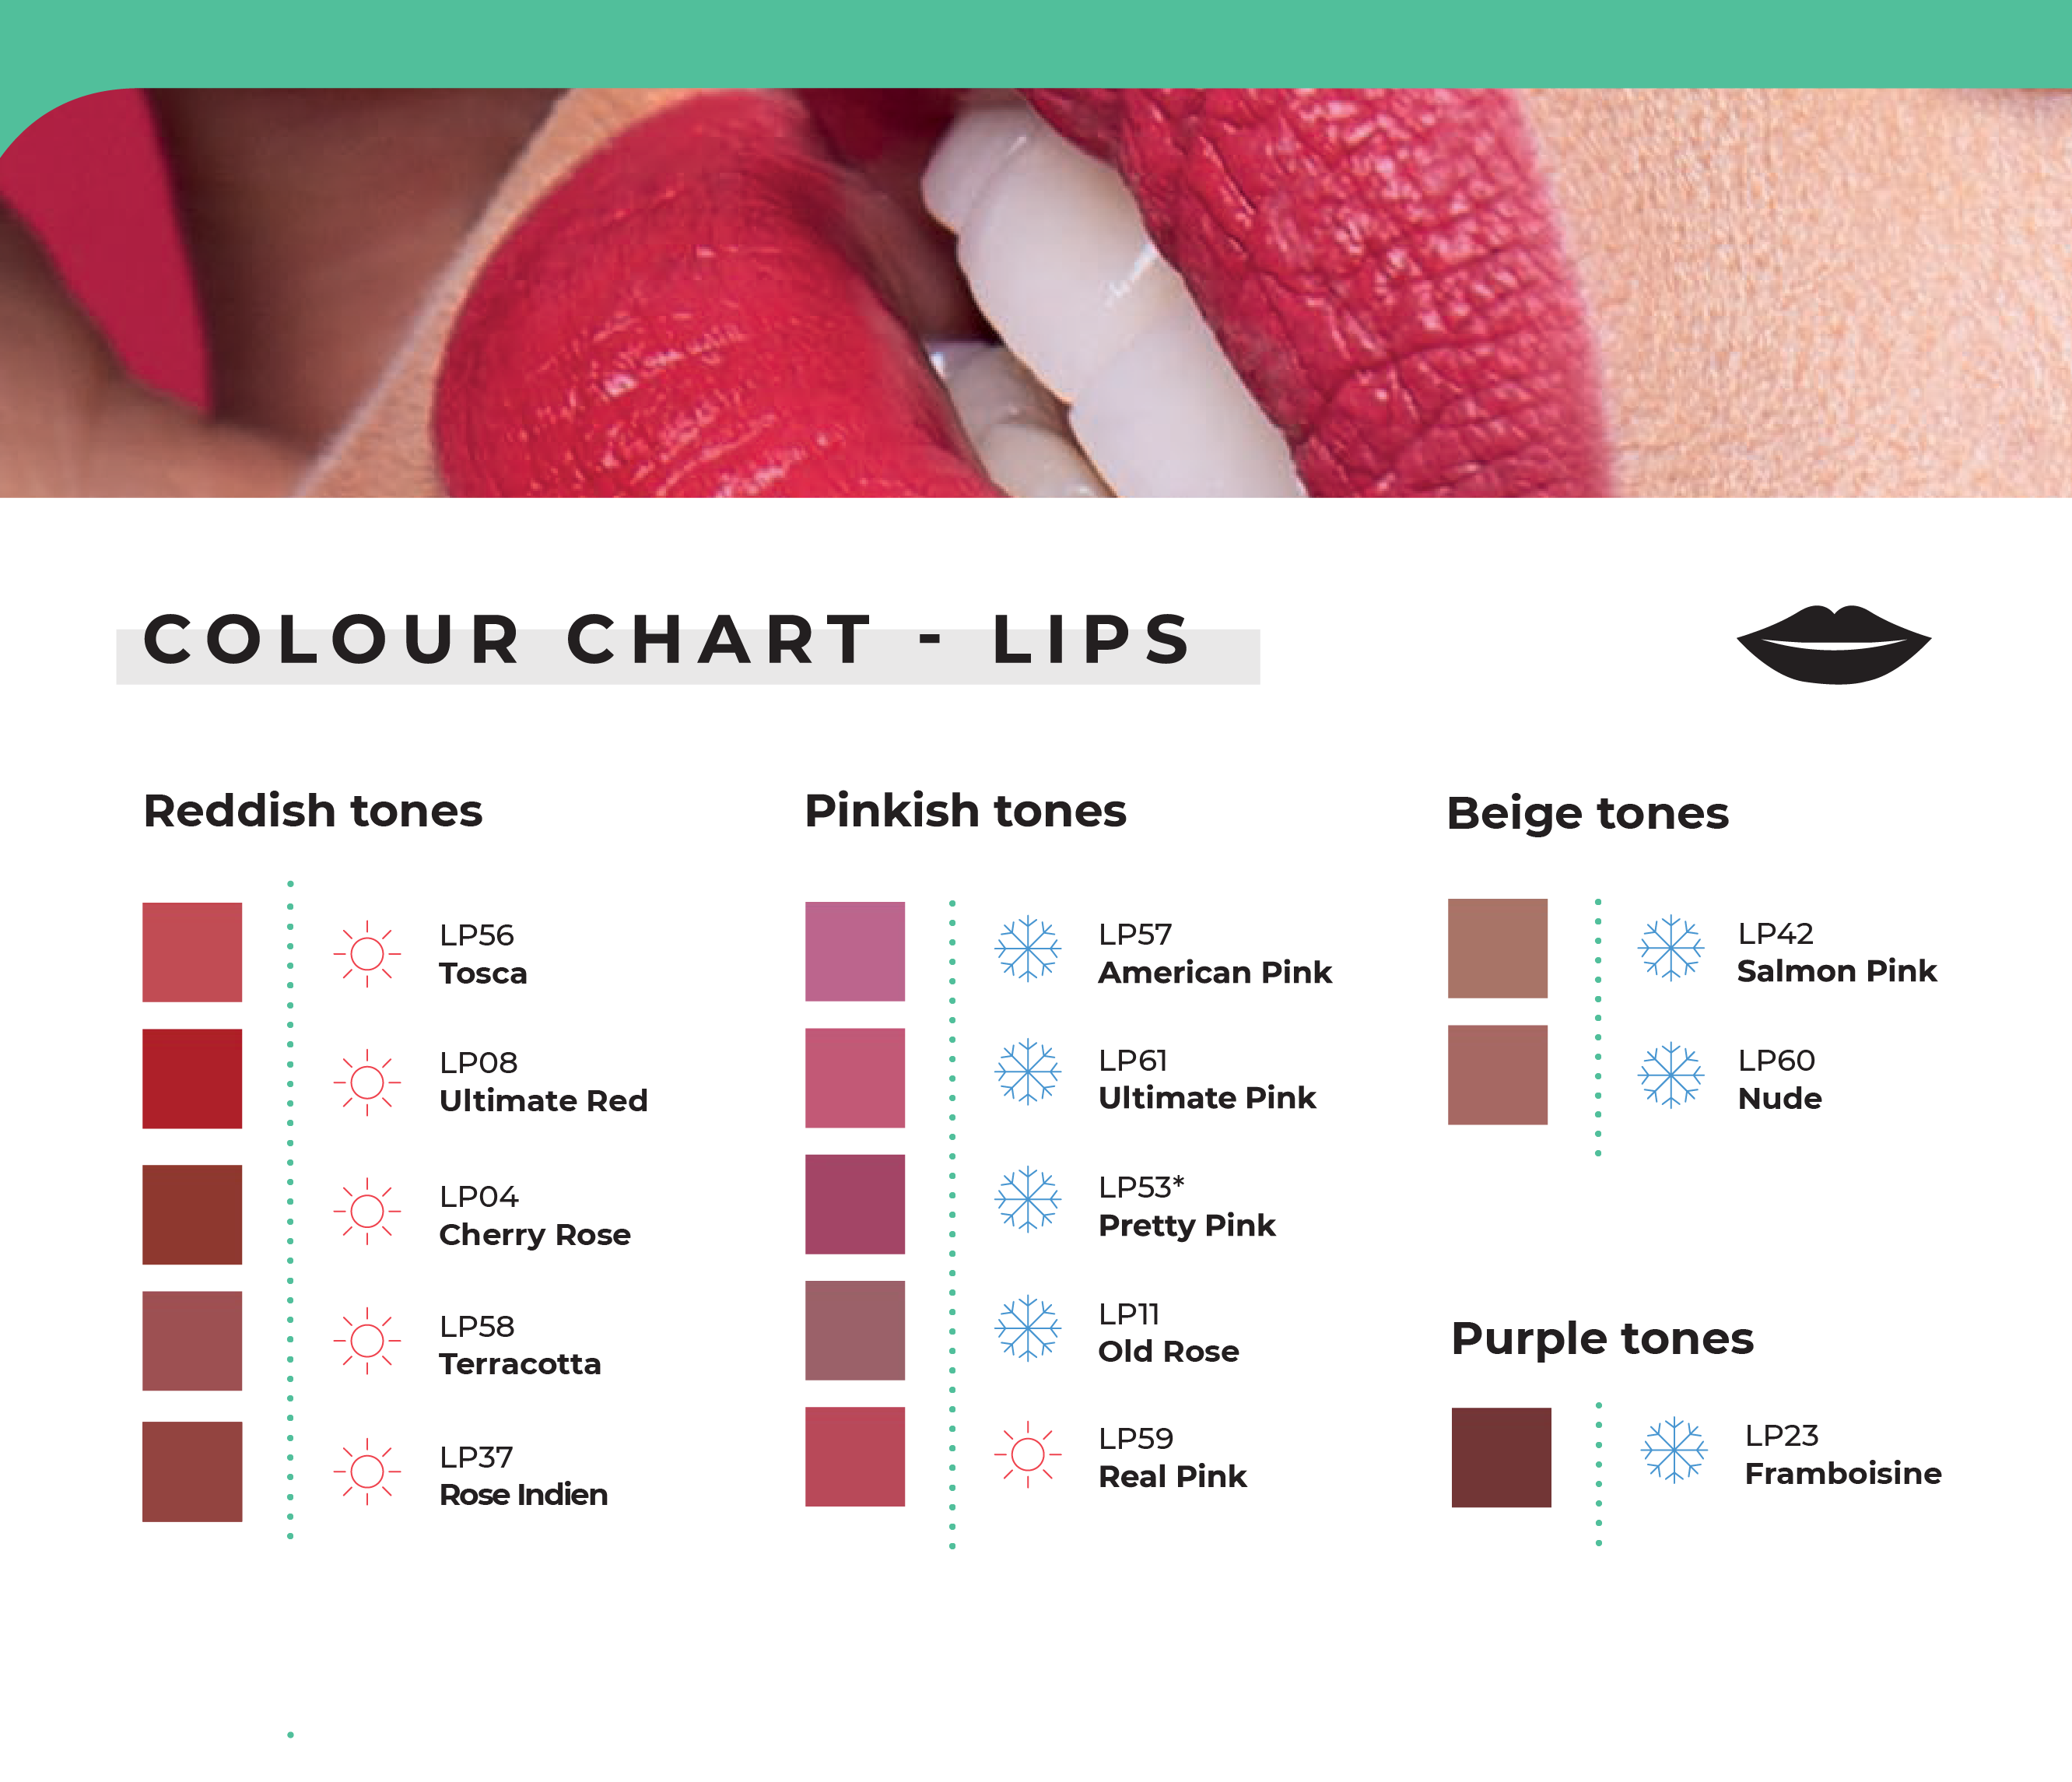 Biotic Phocea Airless Lip Pigments